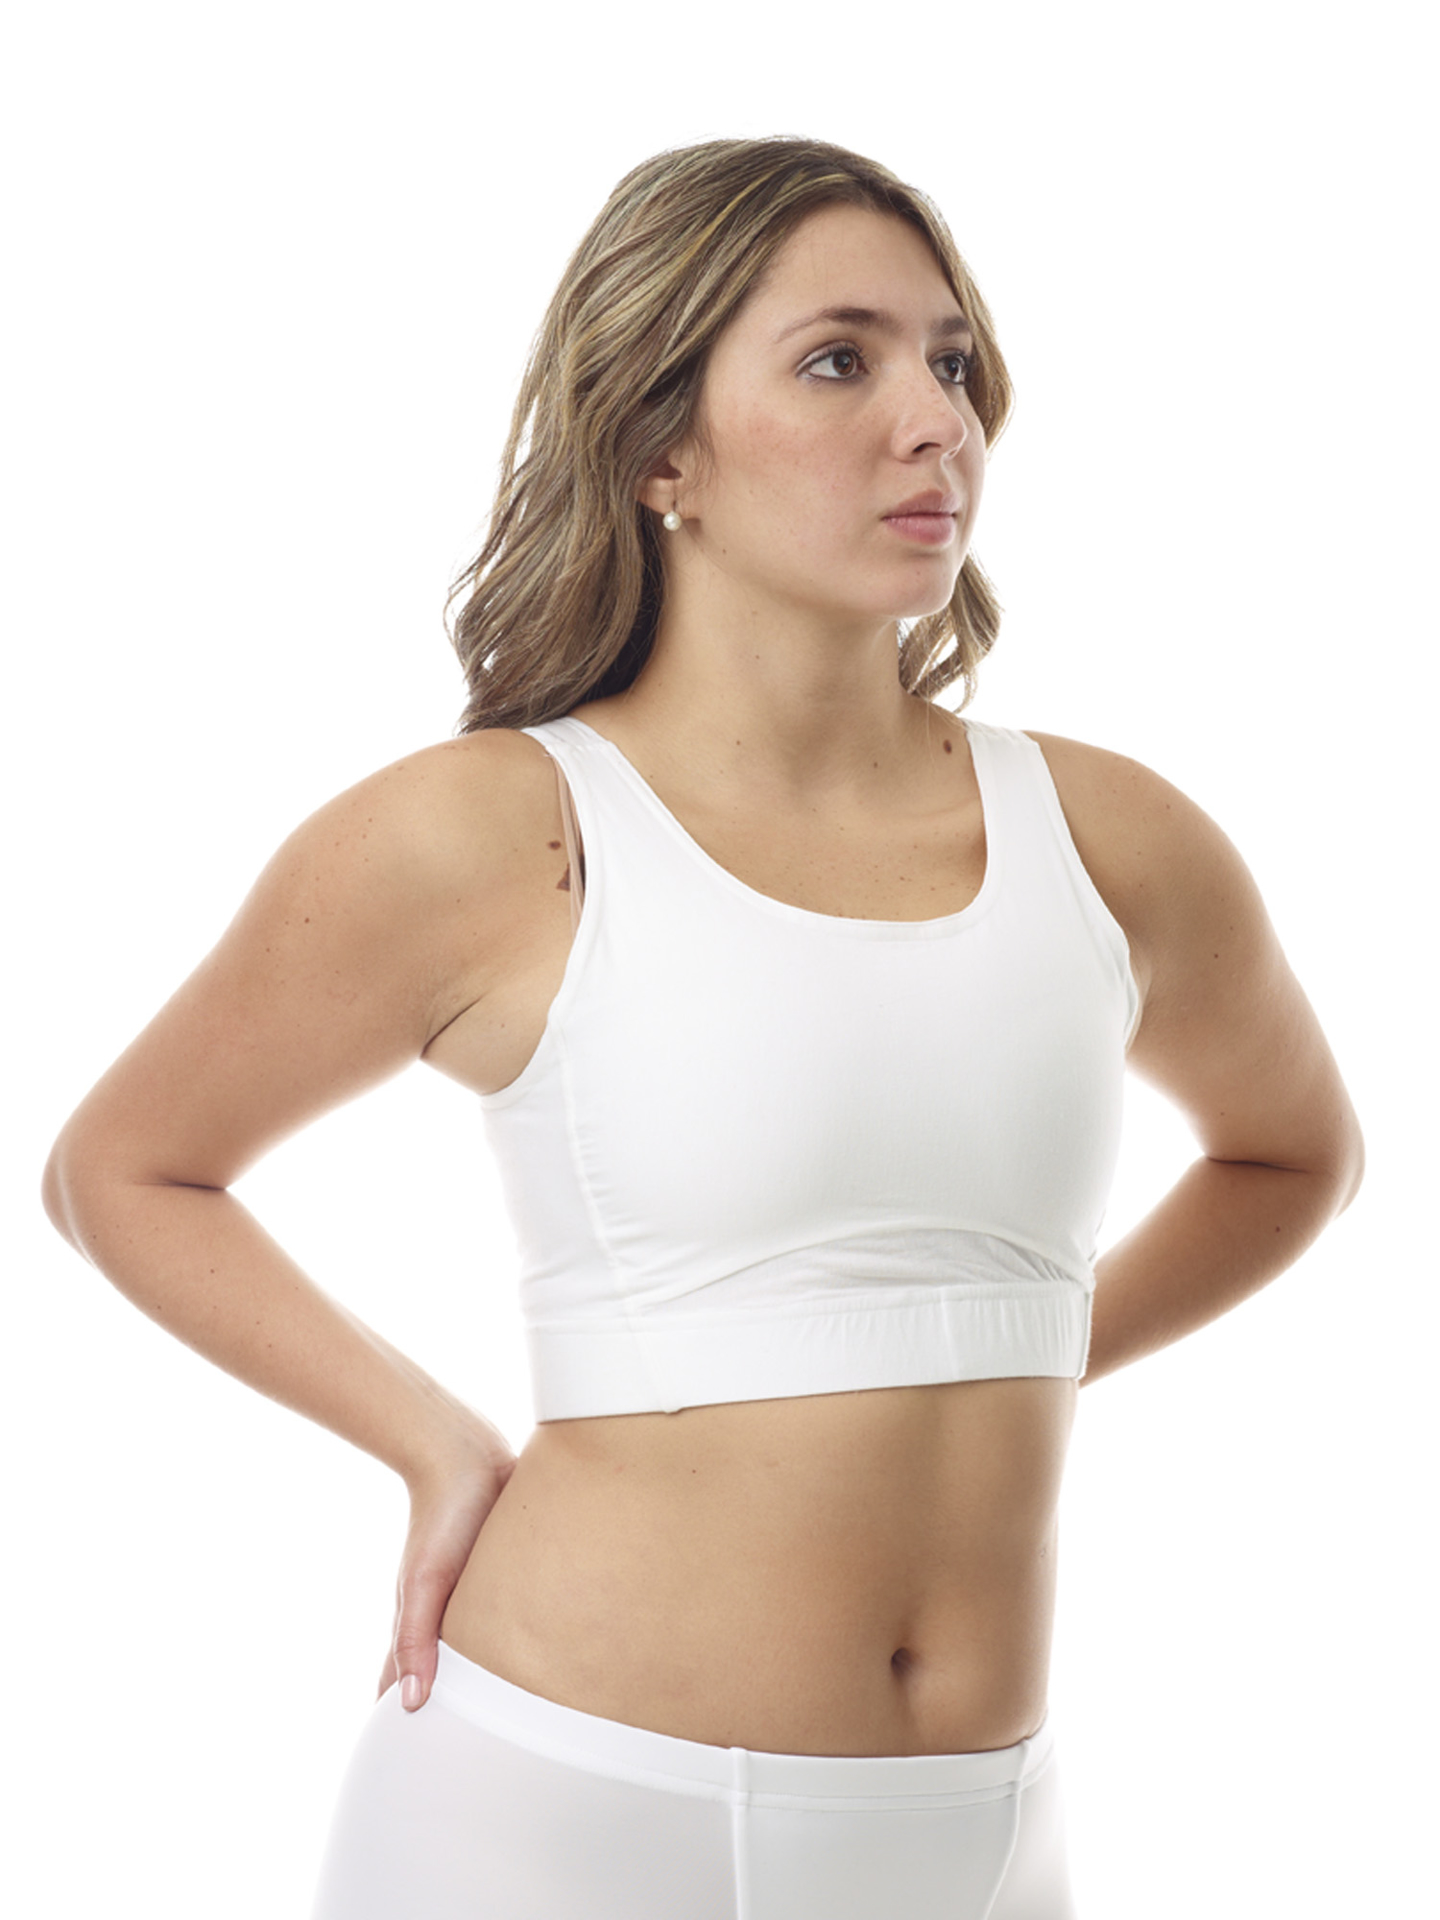 Summer Cotton Female Brassiere Brassiere Sports Bra Tube Tops Top Bra  Underwear